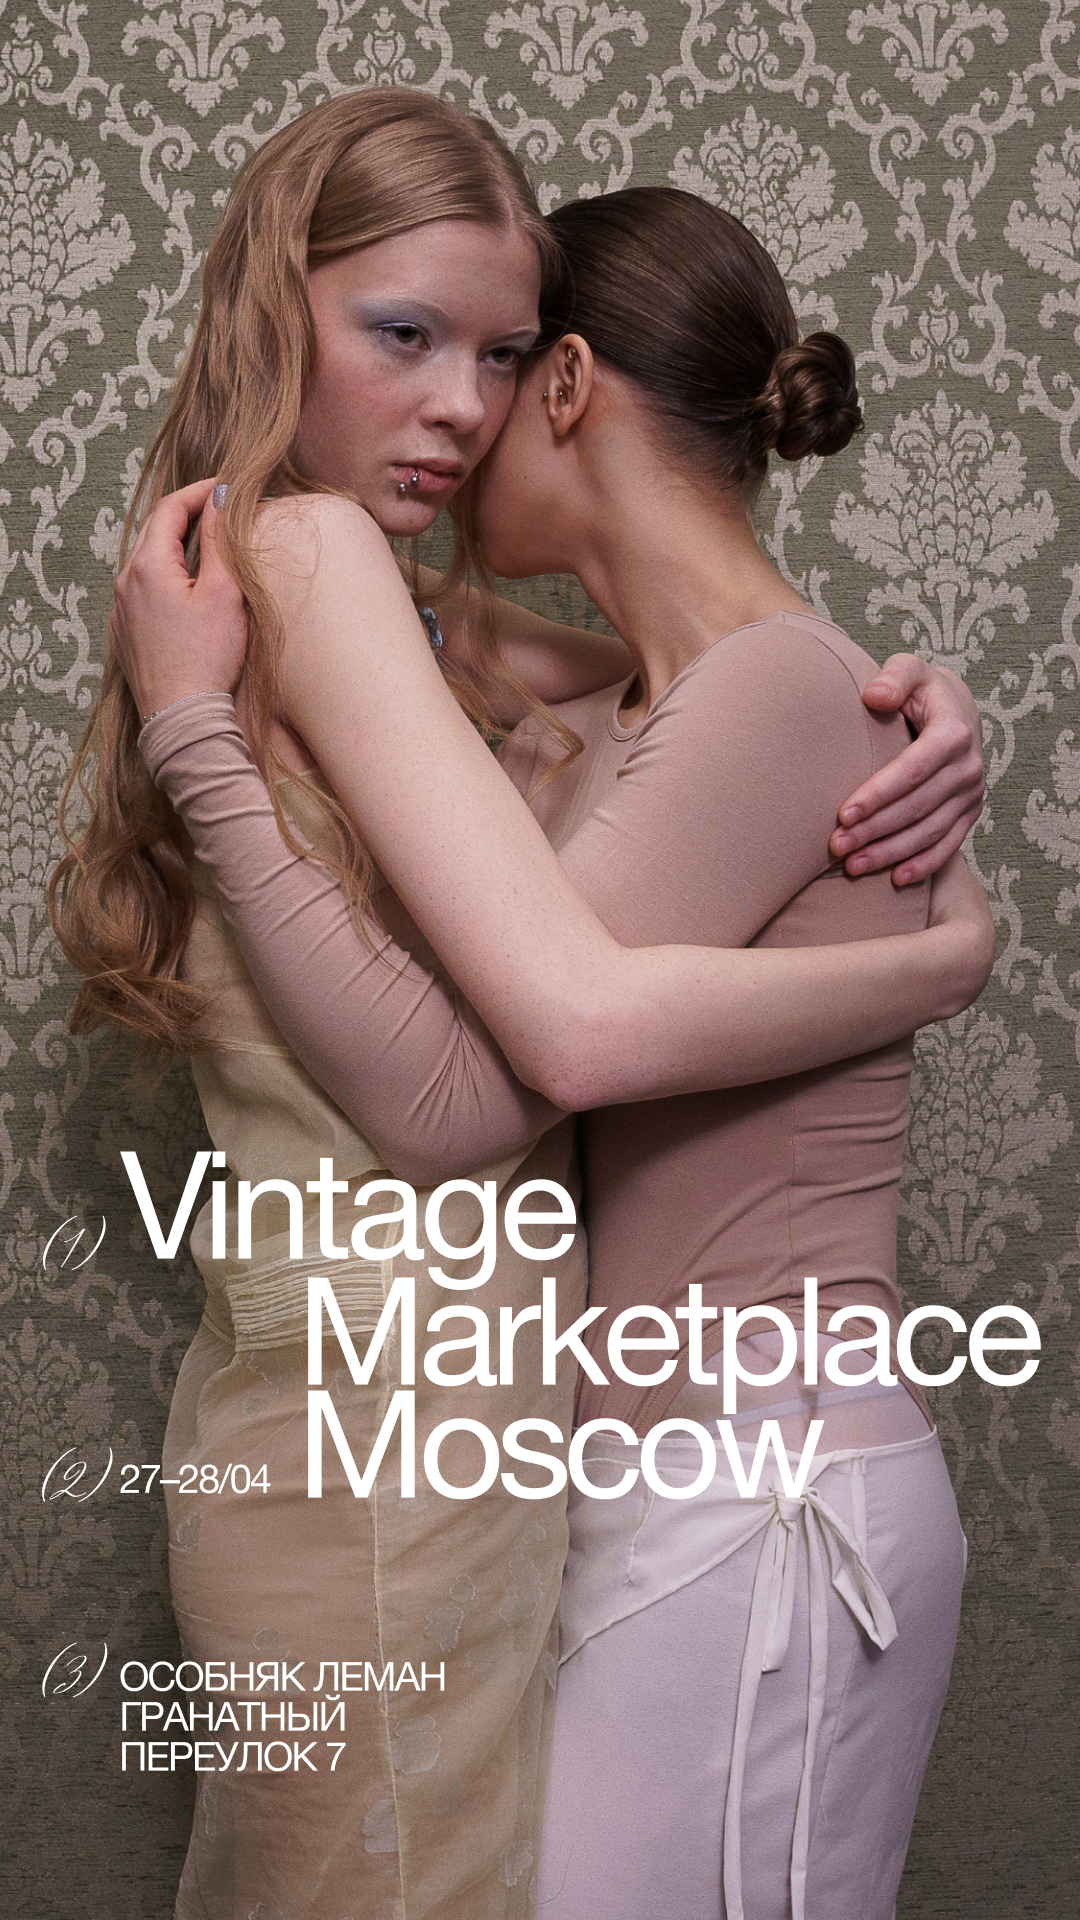 Vintage Marketplace проведет масштабный маркет в особняке Леман (фото 16)